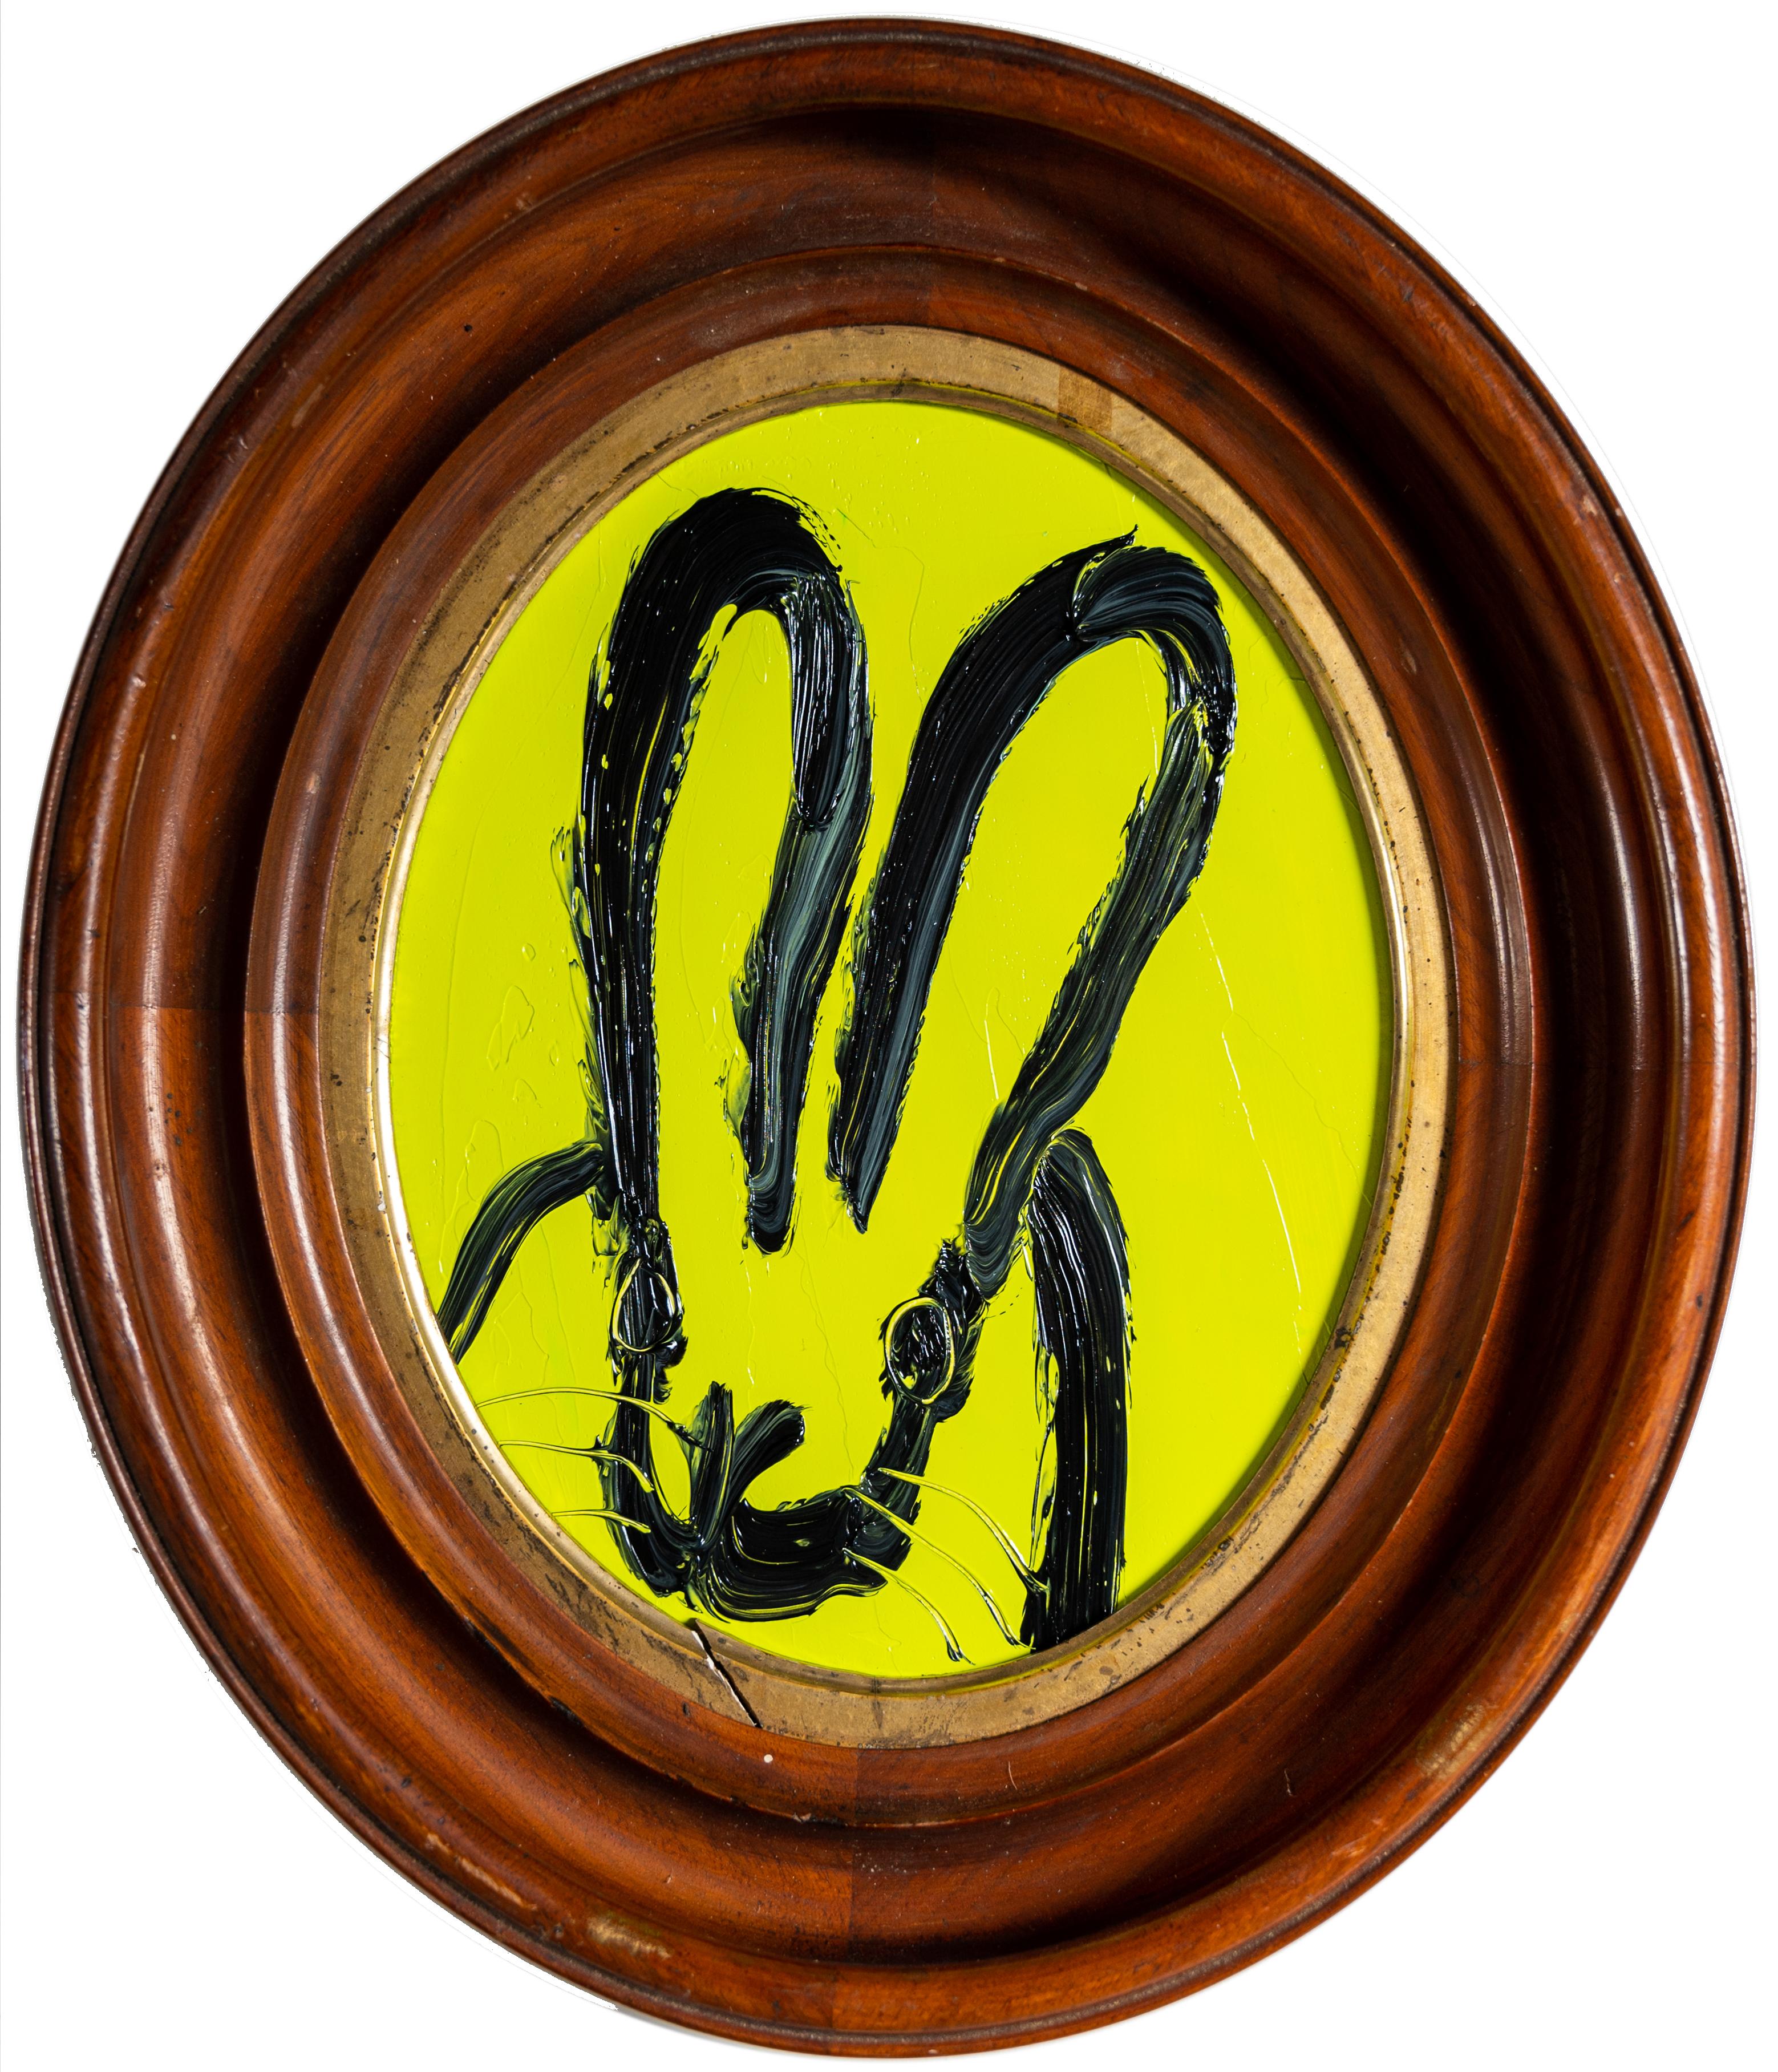 Hunt Slonem "Thalo" Grüner Hase
Ein gestikulierendes Kaninchen in Schwarz auf einem gelben, lindgrünen Hintergrund. Gerahmt in einem ovalen Vintage-Holzrahmen.

Ungerahmt: 10 x 8 Zoll
Gerahmt: 14,5 x 12,5 Zoll
*Gemälde ist gerahmt - Bitte beachten